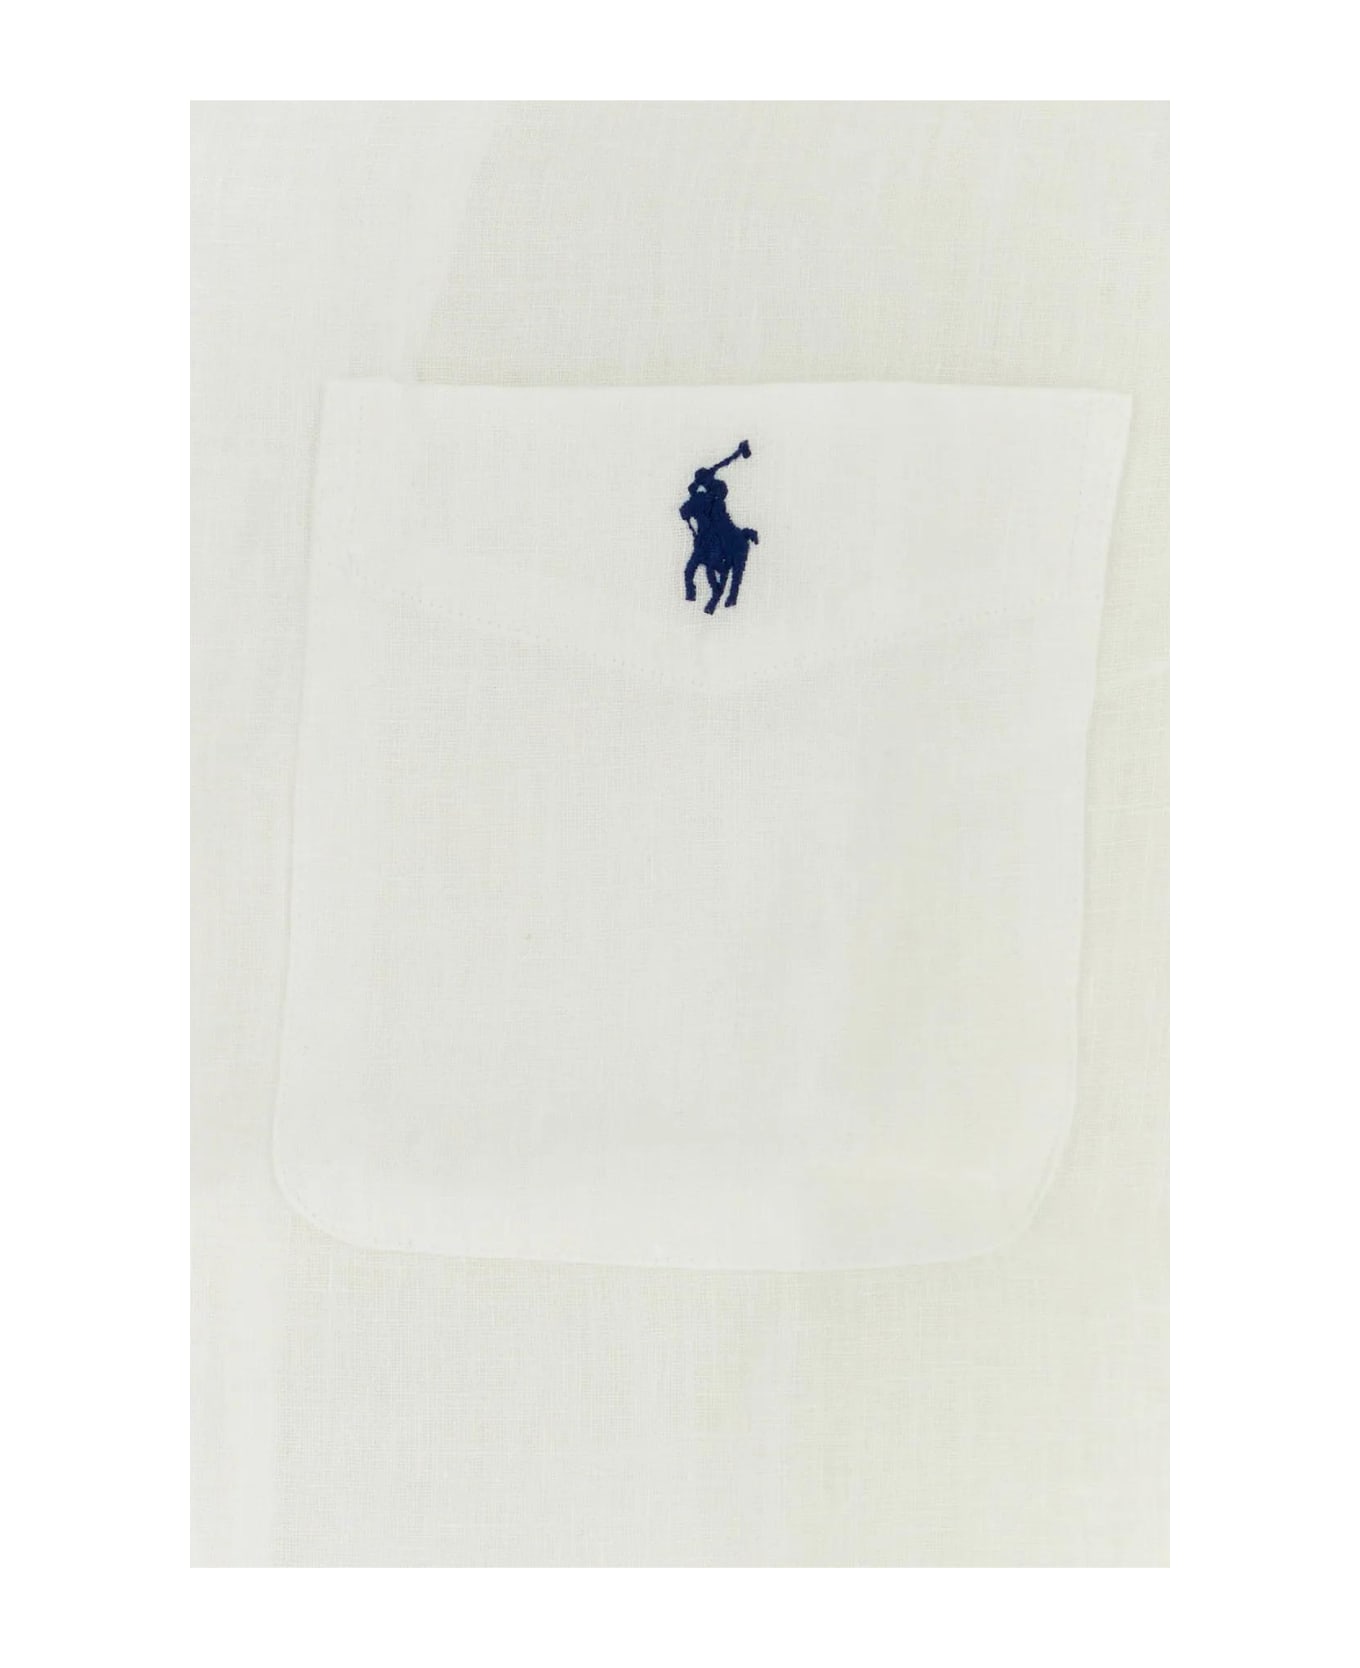 Ralph Lauren White Linen Shirt - 001 シャツ